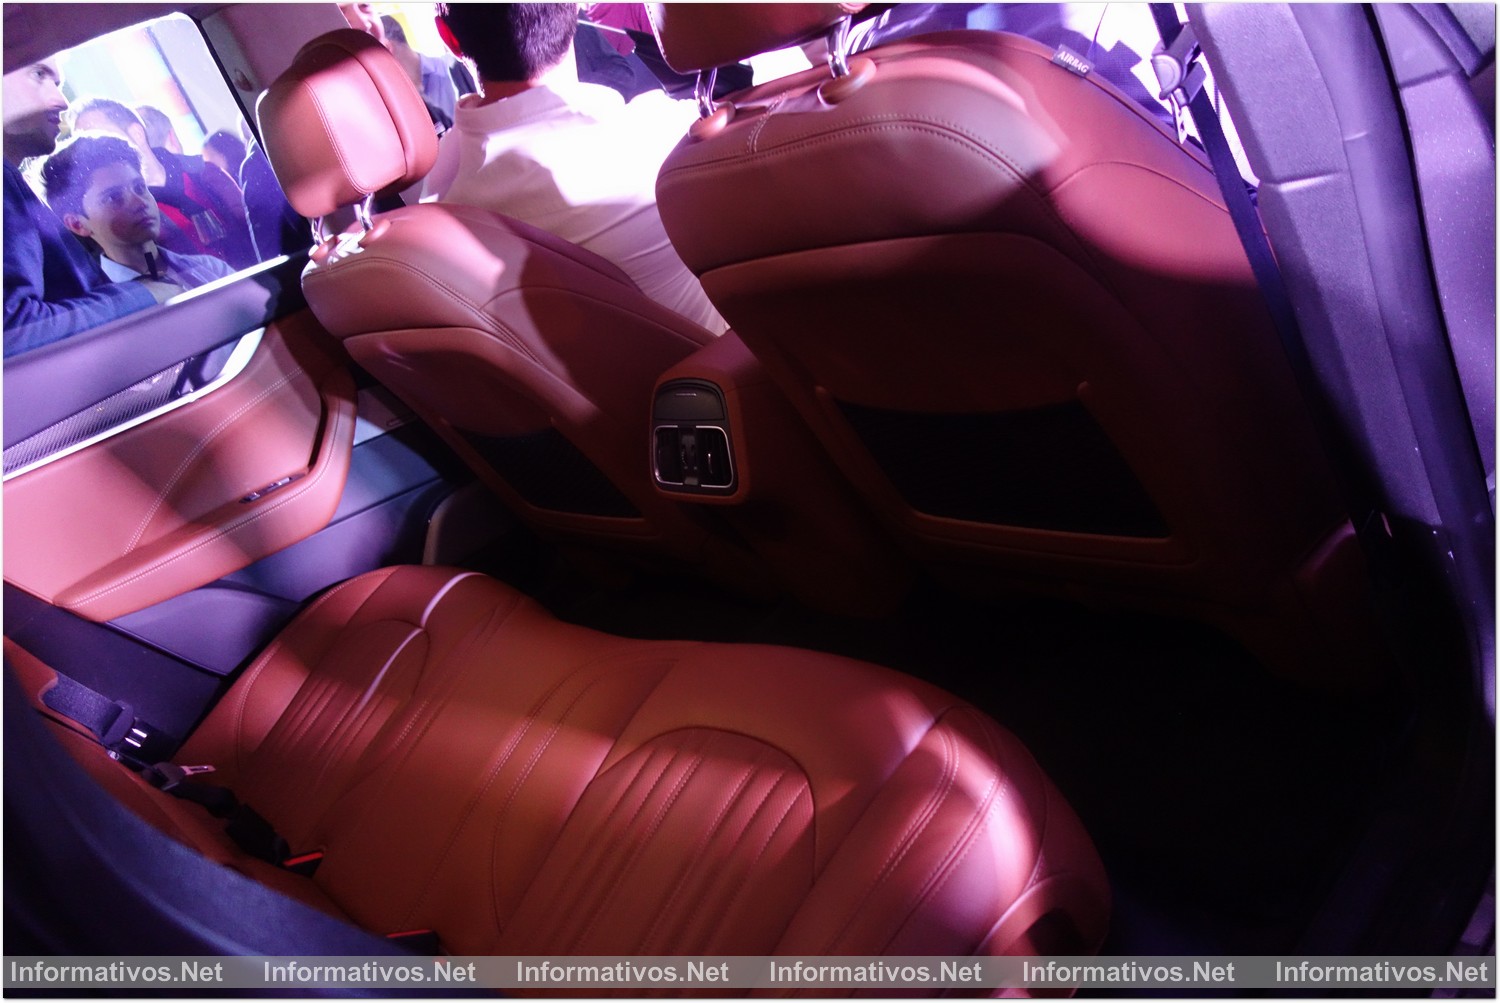 BCN29MAR016.- Presentación de nuevo Maserati Levante en Barcelona.